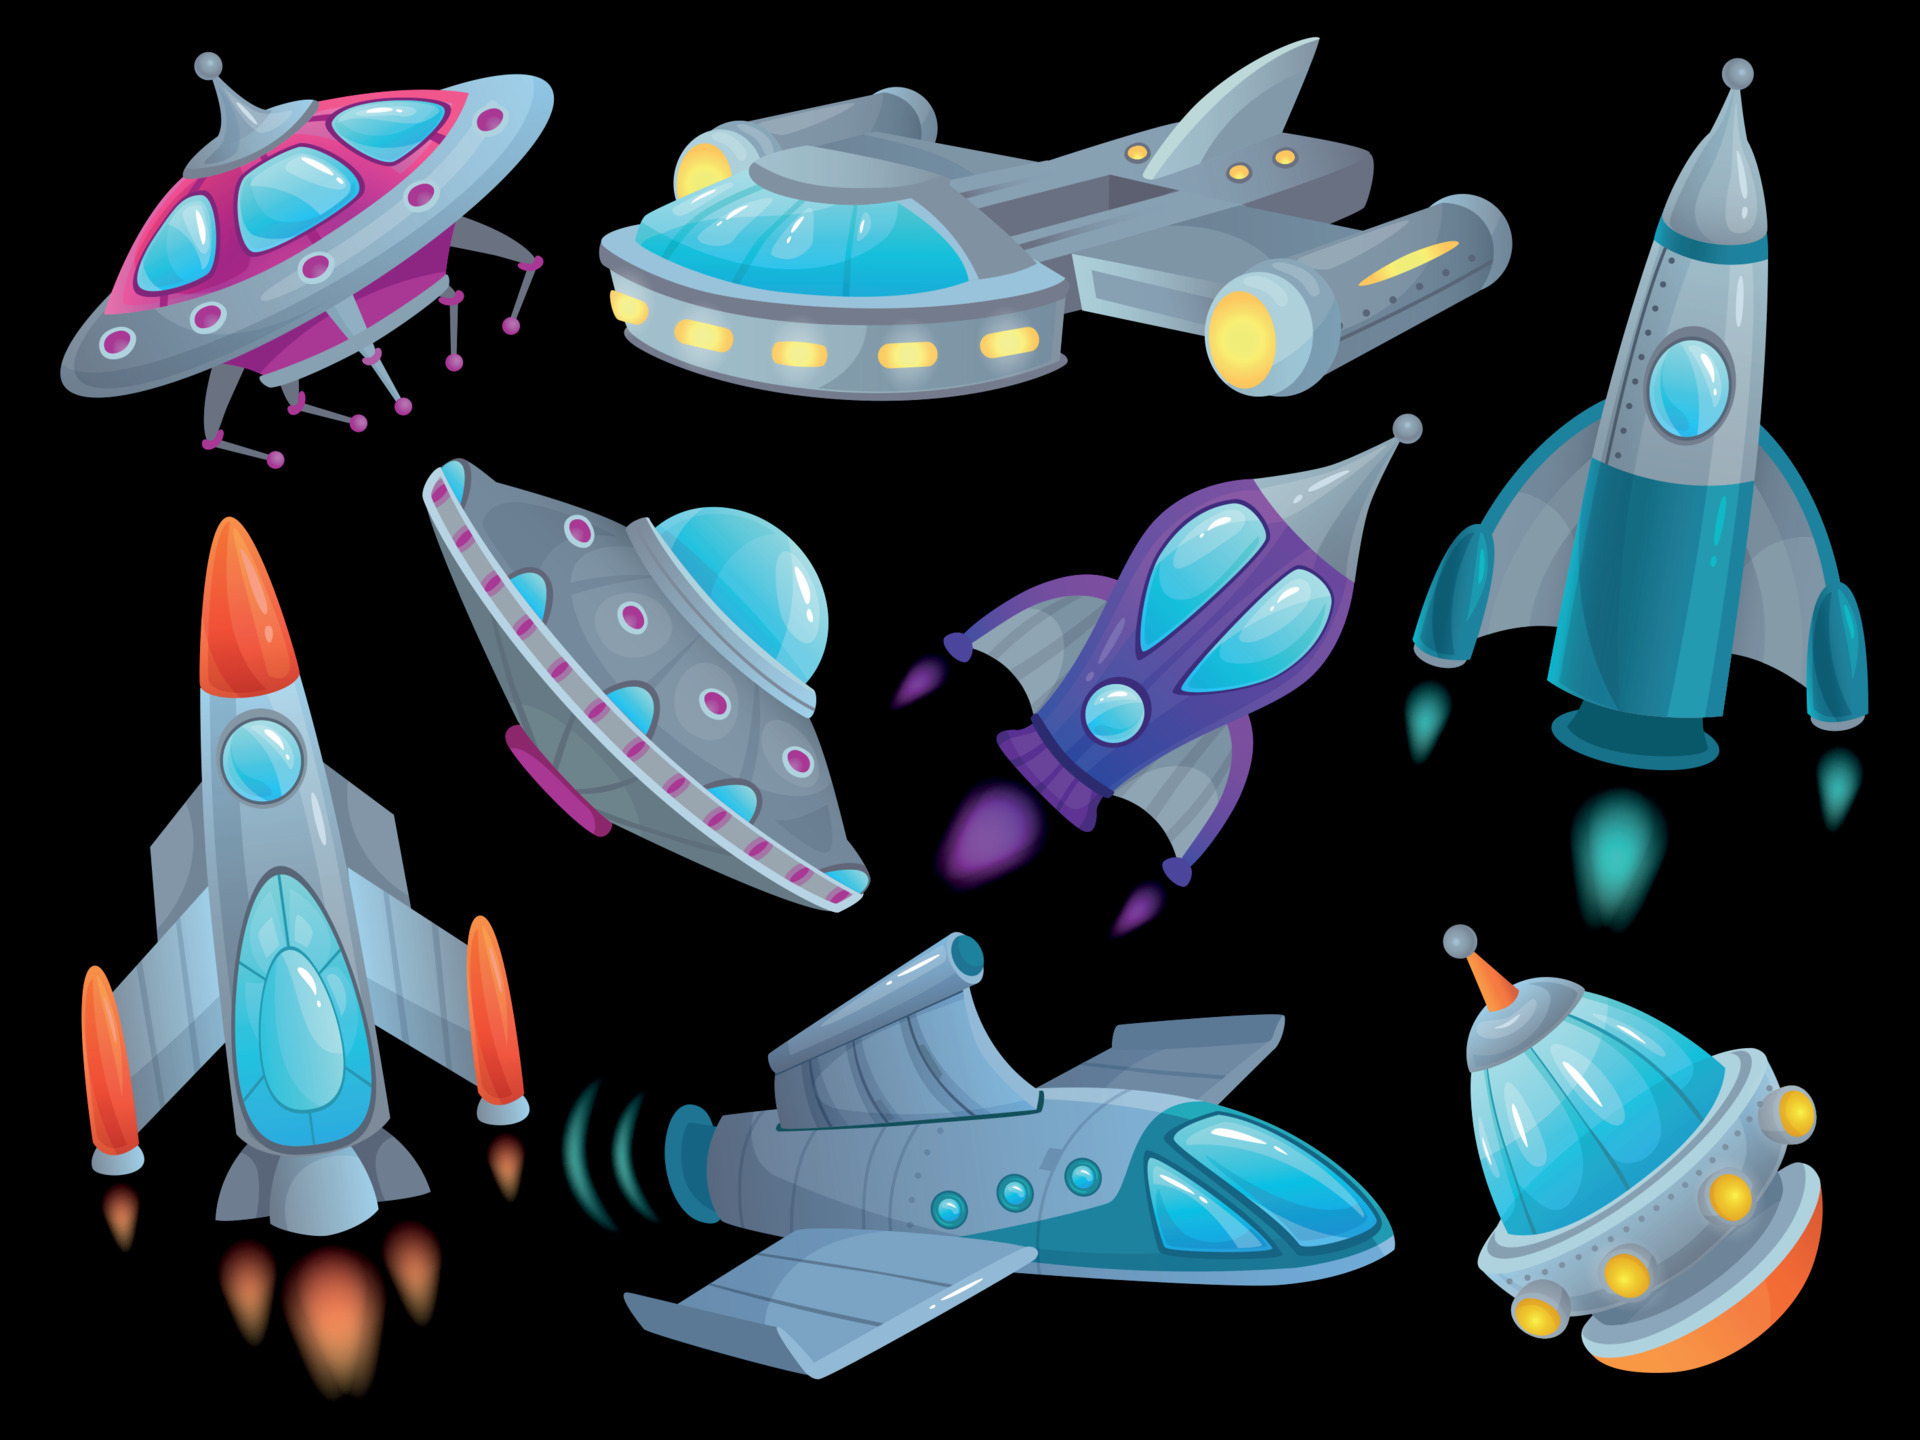 Desenhos animados planetas e naves espaciais. foguetes fantásticos